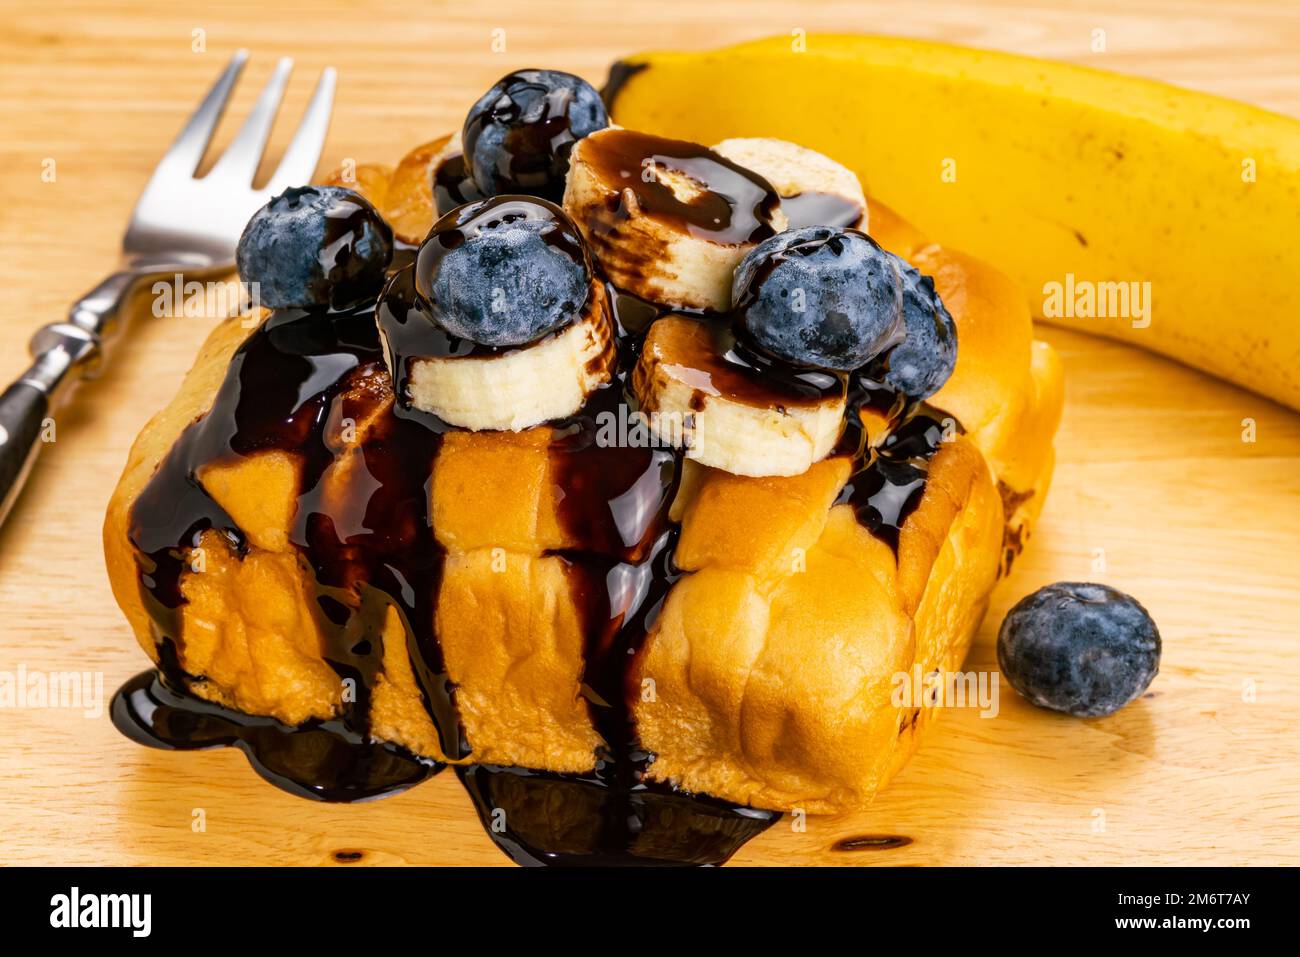 Vue en grand angle de la garniture de pain avec tranche de banane et bleuet verser avec du sirop de chocolat. Banque D'Images